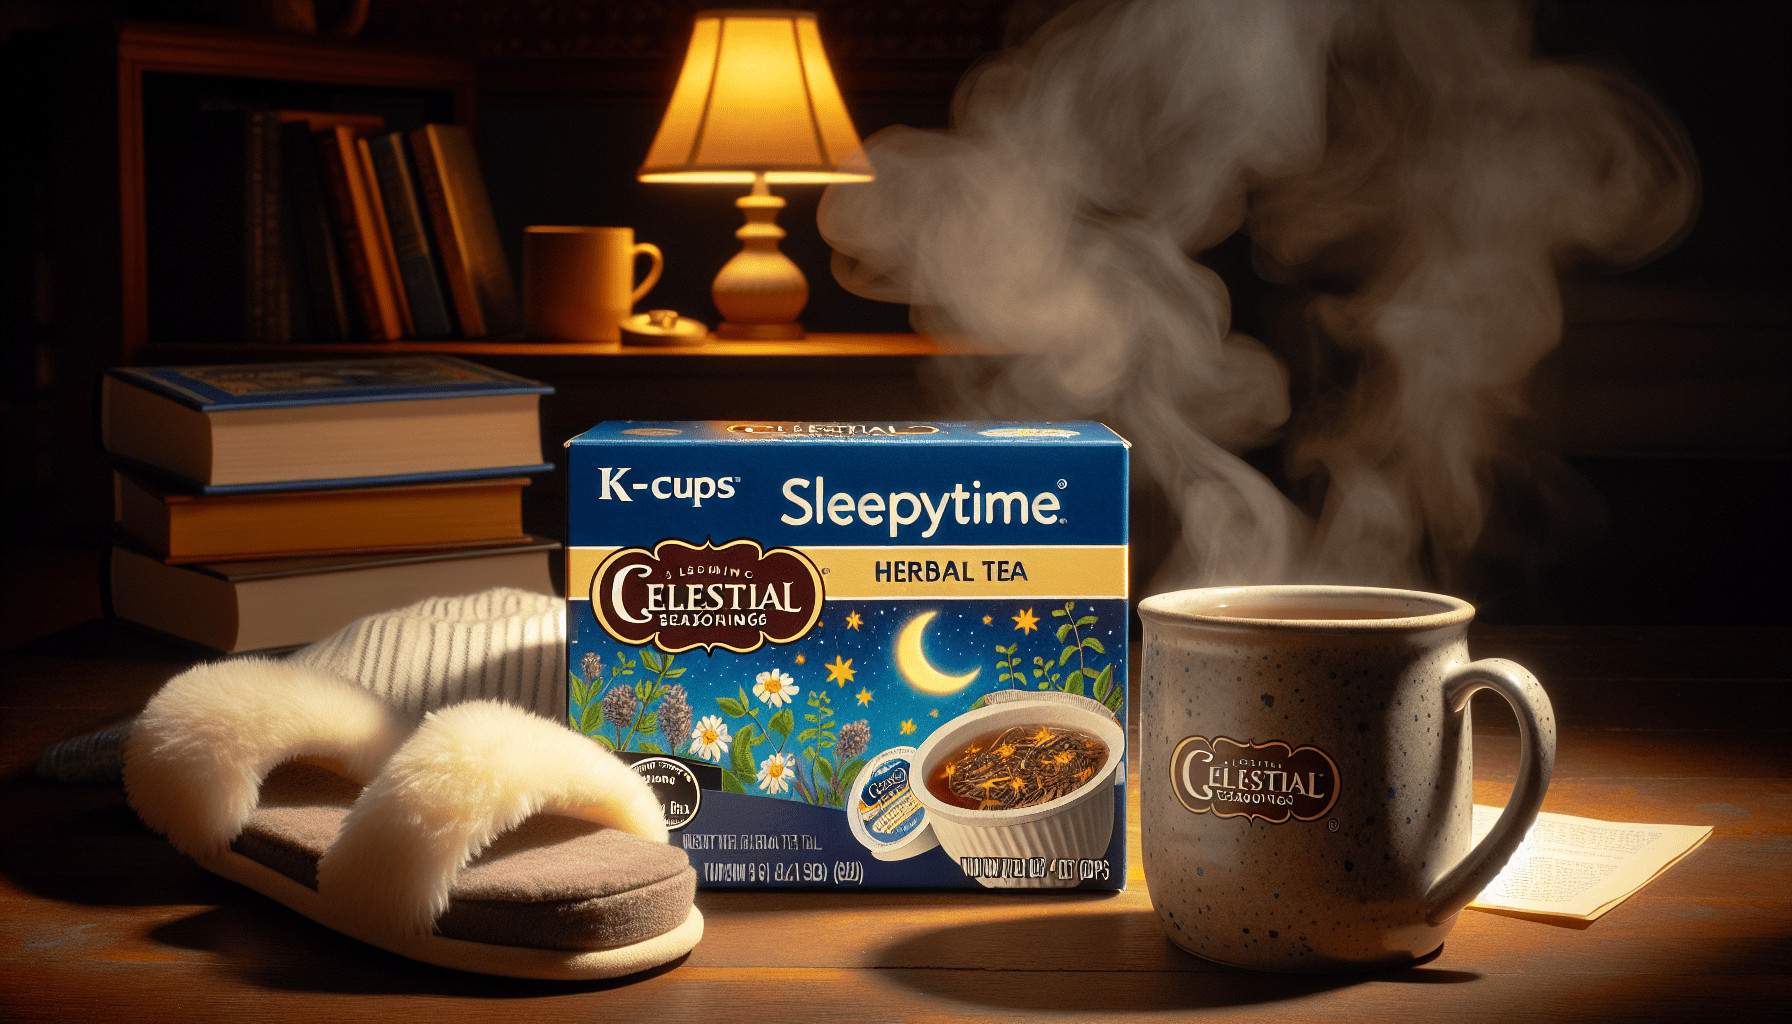 Celestial Seasonings Sleepytime Herbal Tea 96 K-Cups Review